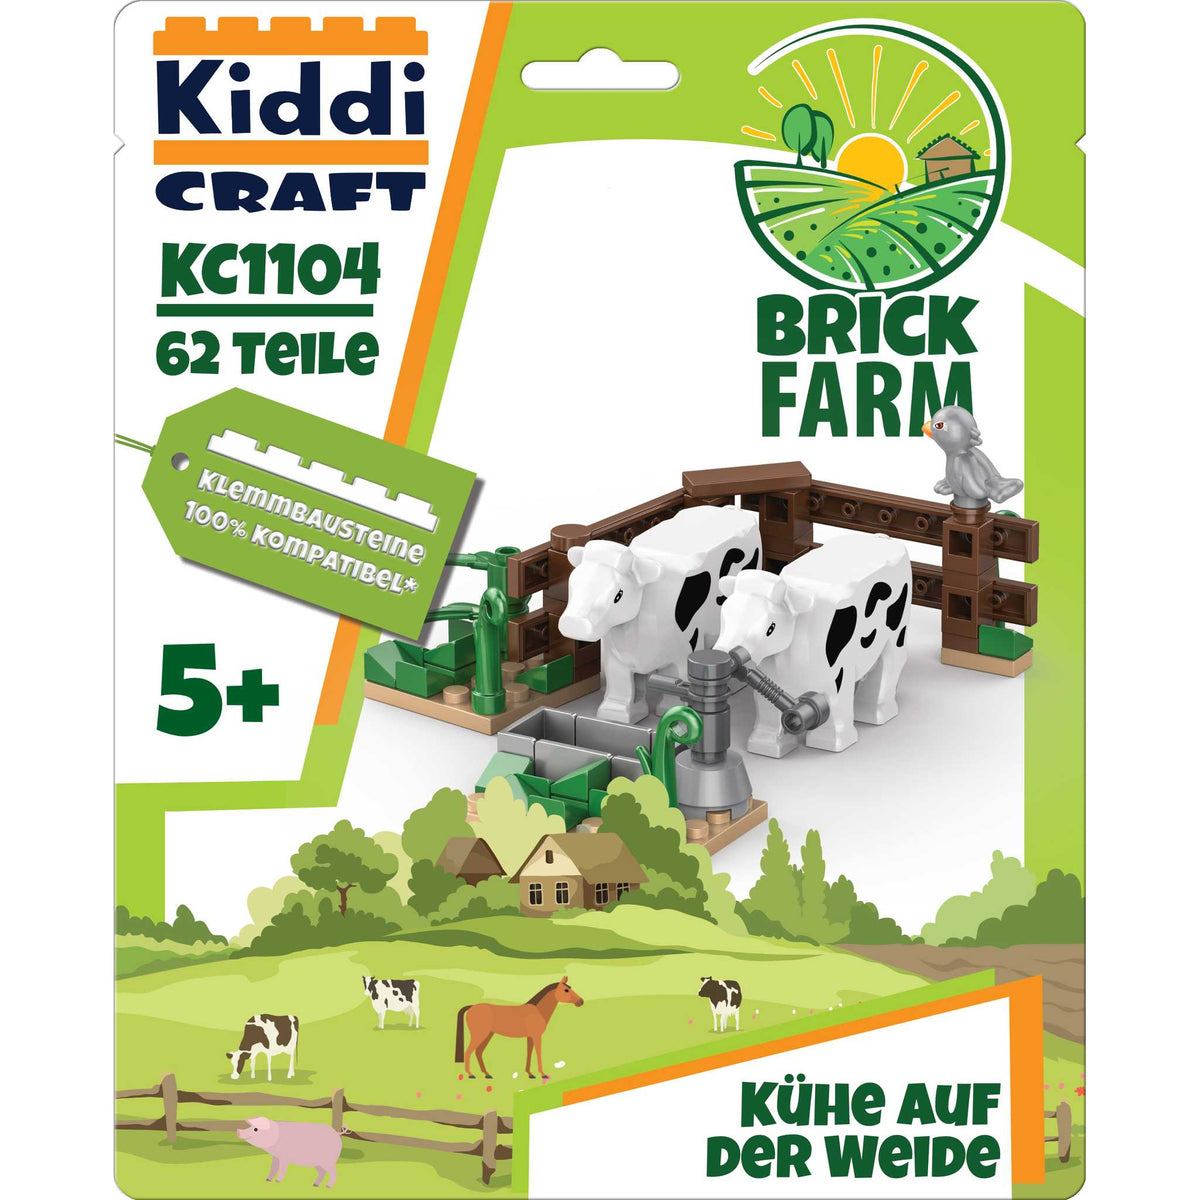 1104 - Kühe auf der Weide (Kiddicraft)